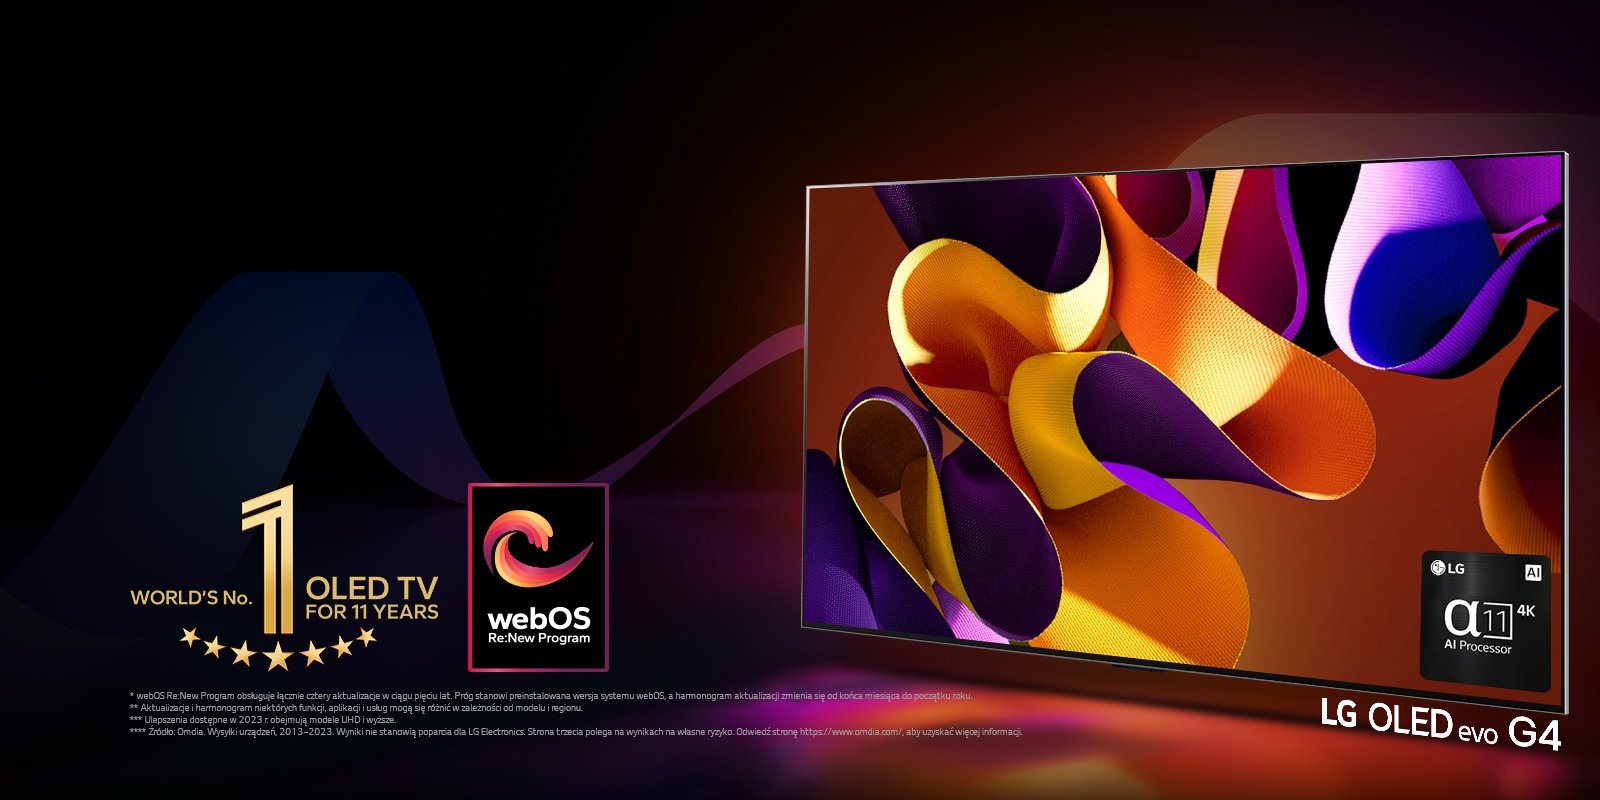 LG OLED evo TV G4 z abstrakcyjną, kolorową grafiką na ekranie na czarnym tle z subtelnymi zawirowaniami kolorów. Światło emitowane z ekranu, rzuca kolorowe cienie. Procesor AI alpha 11 4K znajduje się w prawym dolnym rogu ekranu telewizora. Emblemat „Najlepszy na świecie OLED TV od 11 lat” i logo „Program webOS Re:New” znajdują się na obrazie. Zastrzeżenie brzmi następująco: „webOS Re:New Program obsługuje łącznie cztery aktualizacje w ciągu pięciu lat. Próg stanowi preinstalowana wersja systemu webOS, a harmonogram aktualizacji zmienia się od końca miesiąca do początku roku”.  „Aktualizacje i harmonogram niektórych funkcji, aplikacji i usług mogą się różnić w zależności od modelu i regionu”.  „Ulepszenia dostępne w 2023 r. obejmują modele UHD i wyższe”. „Źródło: Omdia. Wysyłki urządzeń, 2013–2023. Wyniki nie stanowią poparcia dla LG Electronics. Strona trzecia polega na wynikach na własne ryzyko. Odwiedź stronę https://www.omdia.com/, aby uzyskać więcej informacji”.